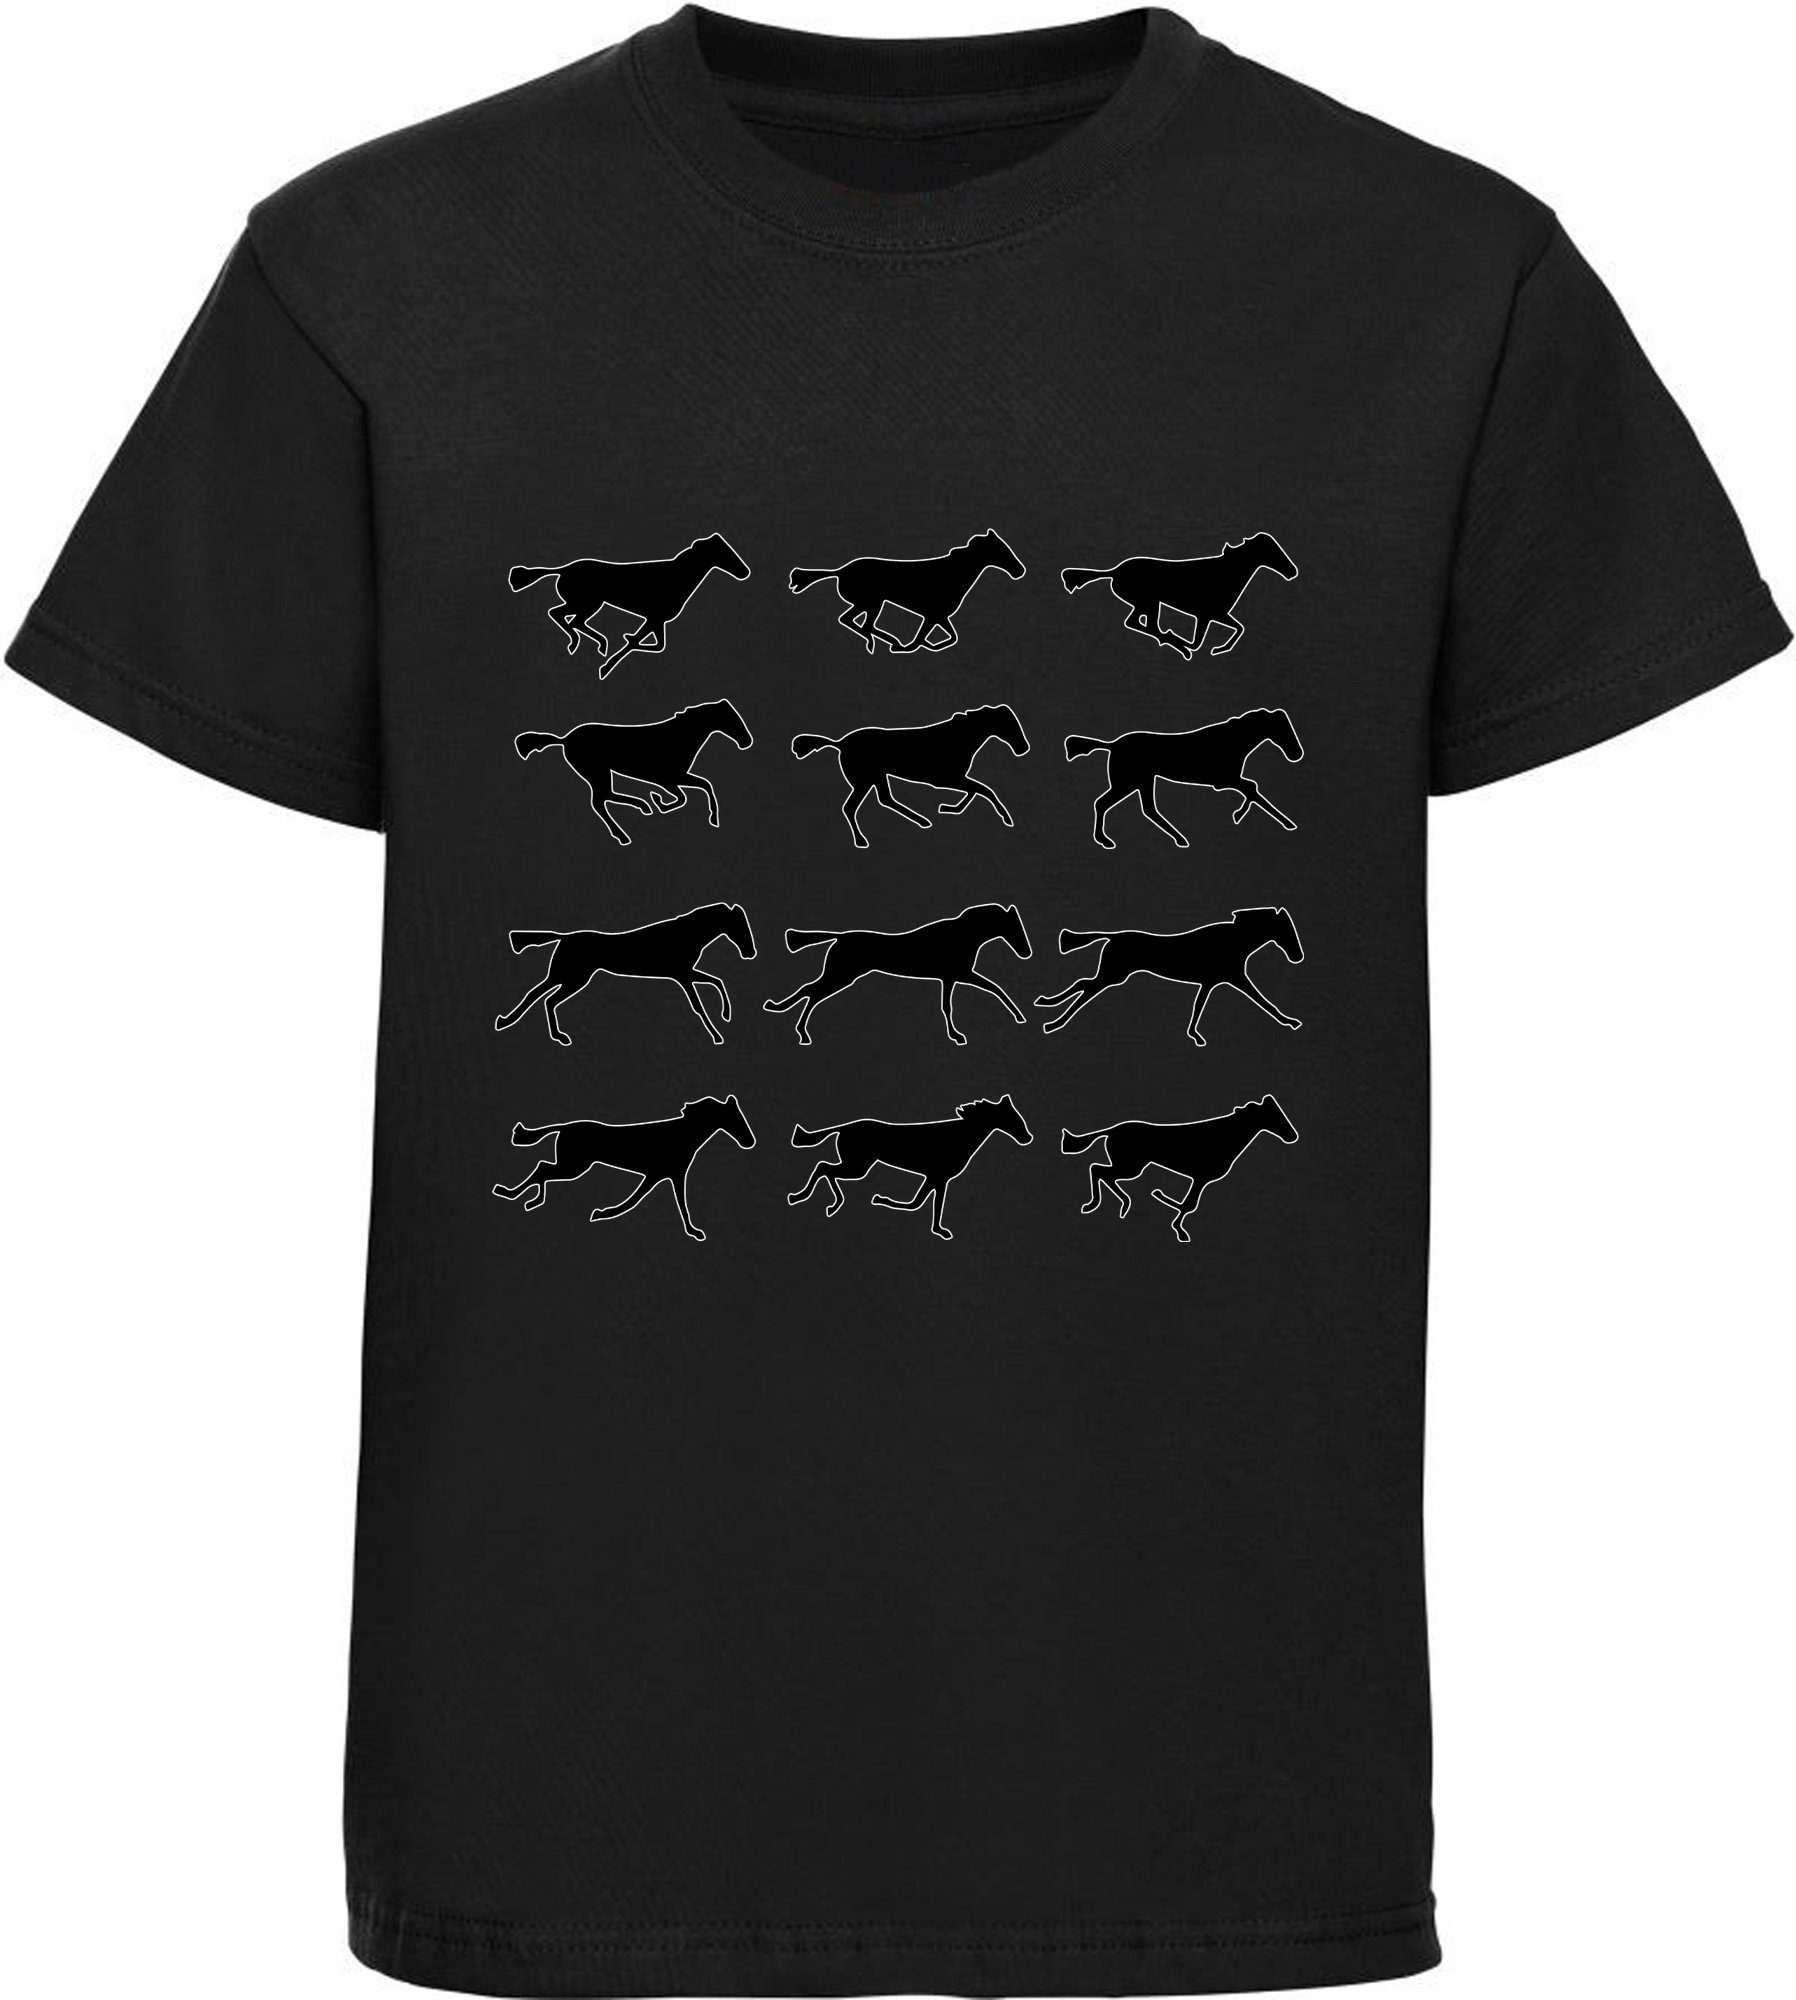 Vollendetheit MyDesign24 Print-Shirt T-Shirt von schwarz mit Silhouetten Baumwollshirt Pferden i173 Aufdruck, bedrucktes - Mädchen